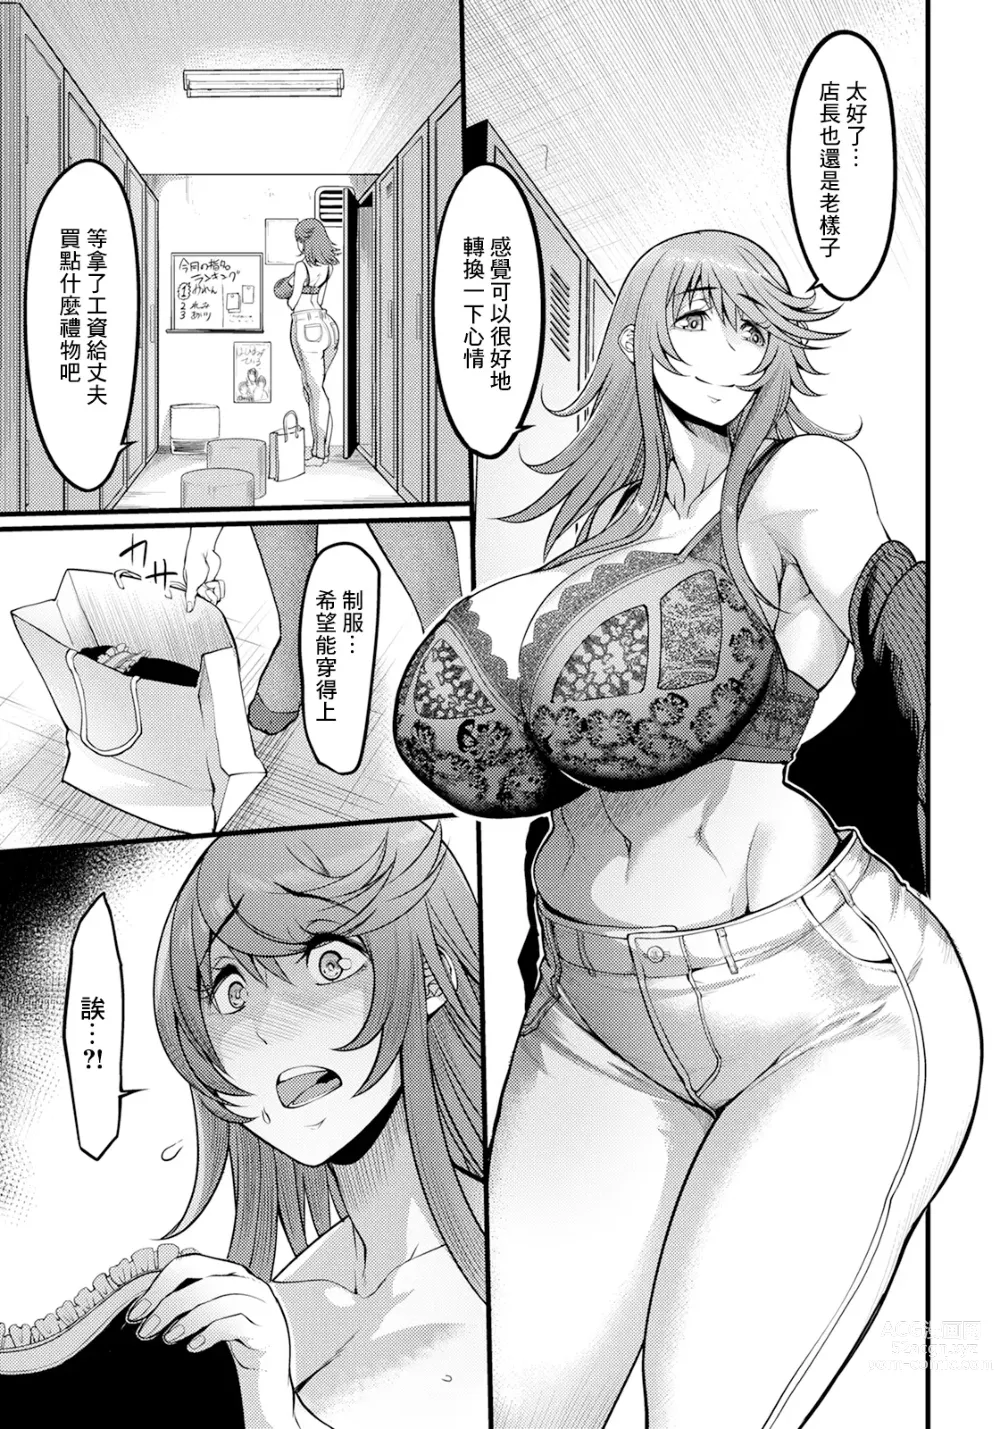 Page 3 of manga Uwa Kitsu Maid Cafe ~Hitozuma Kanjokuten~